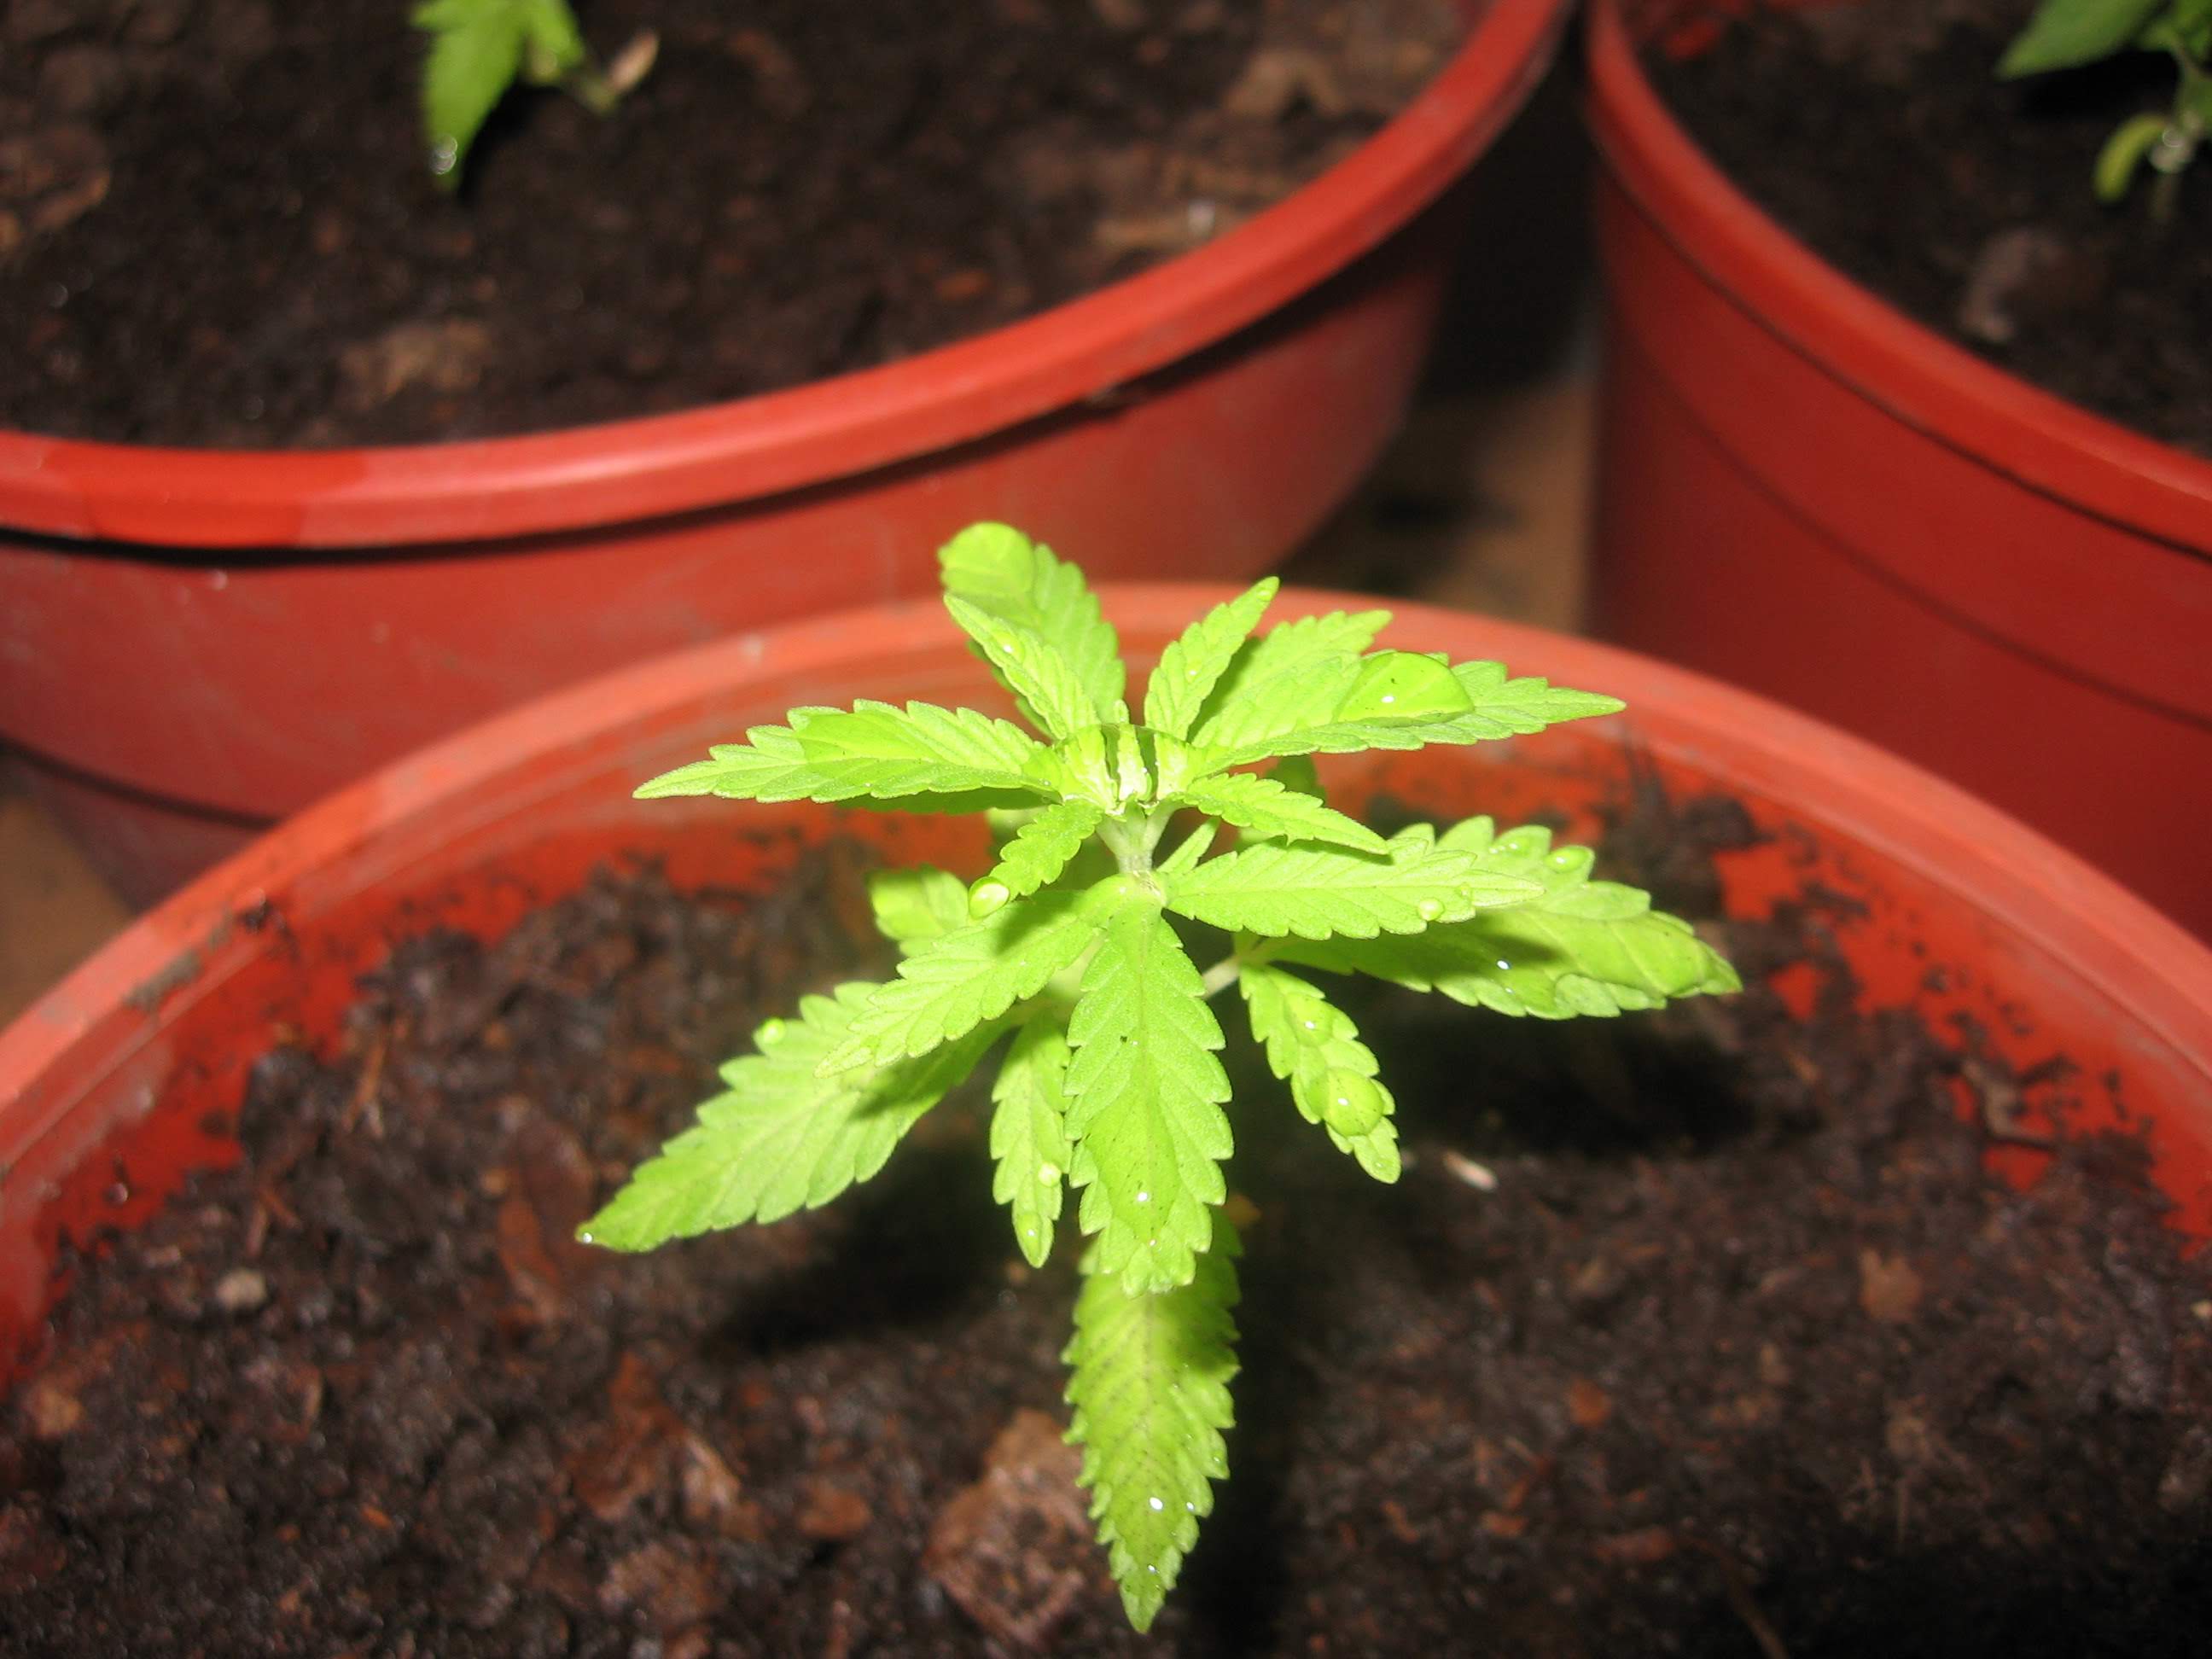 Cannabis in vegetative stage - week 1